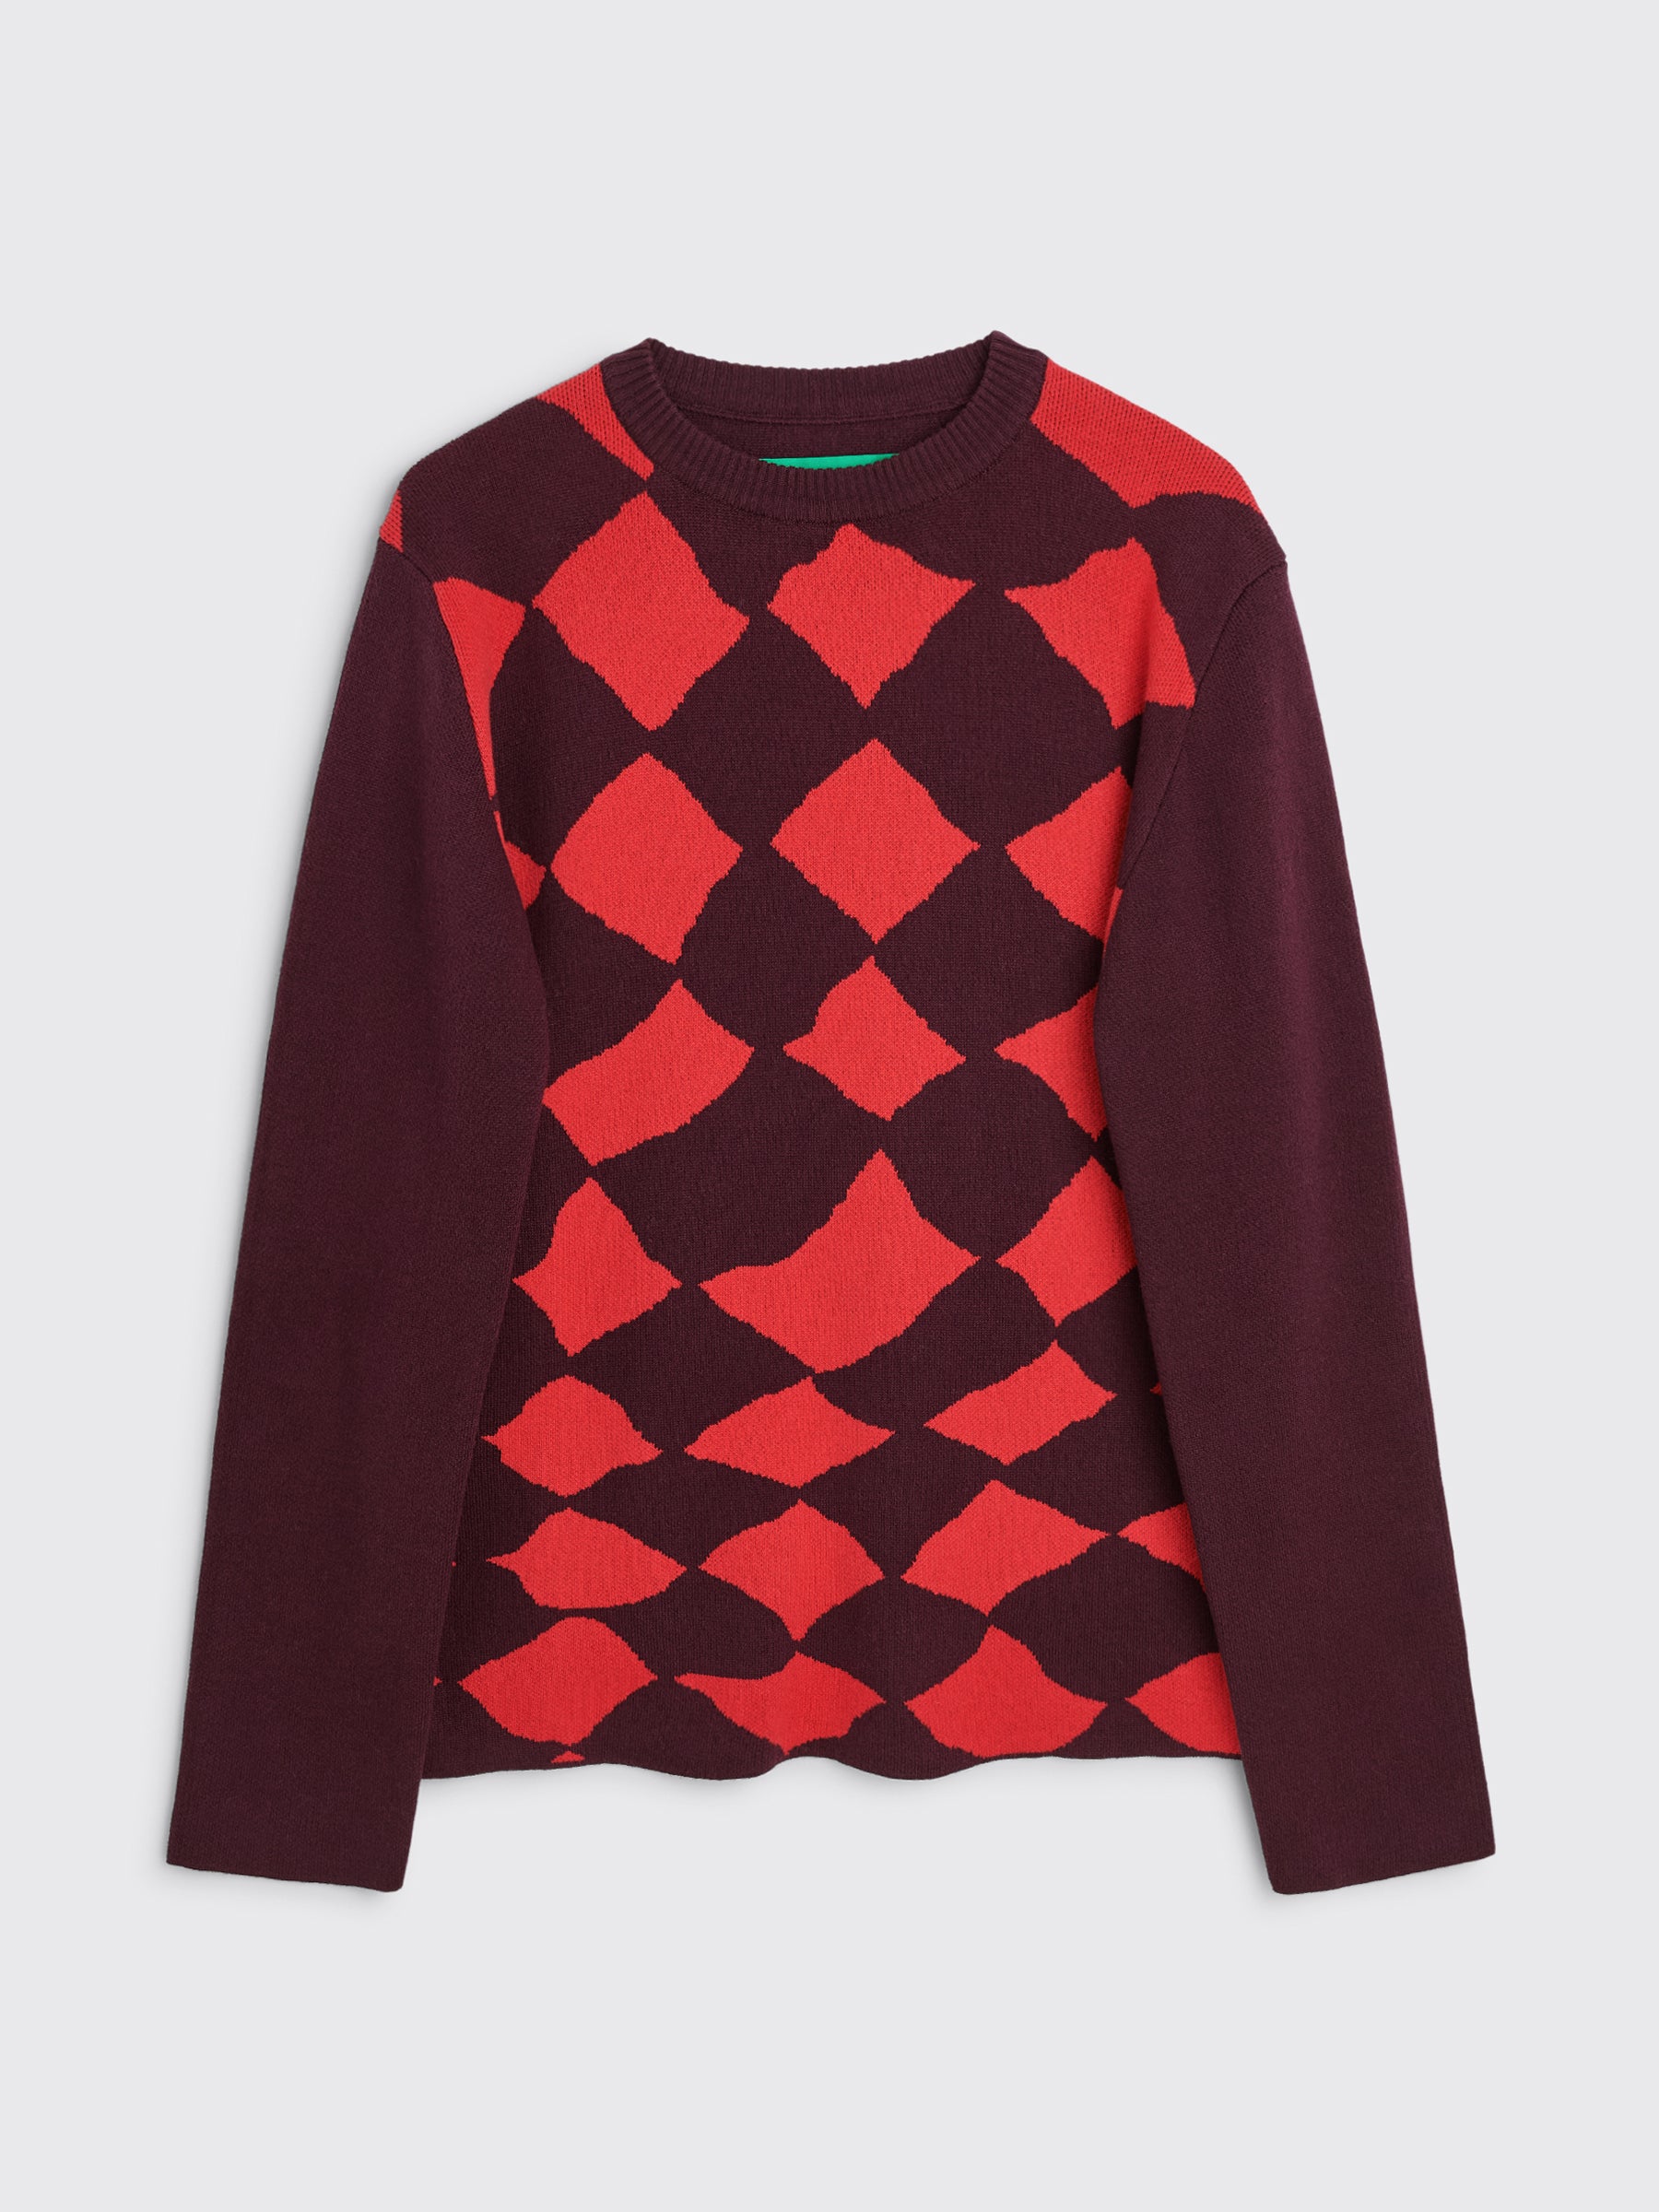 TRÈS BIEN everywear Pattern Knitted Sweatshirt Cotton Cashmere Burgundy / Red